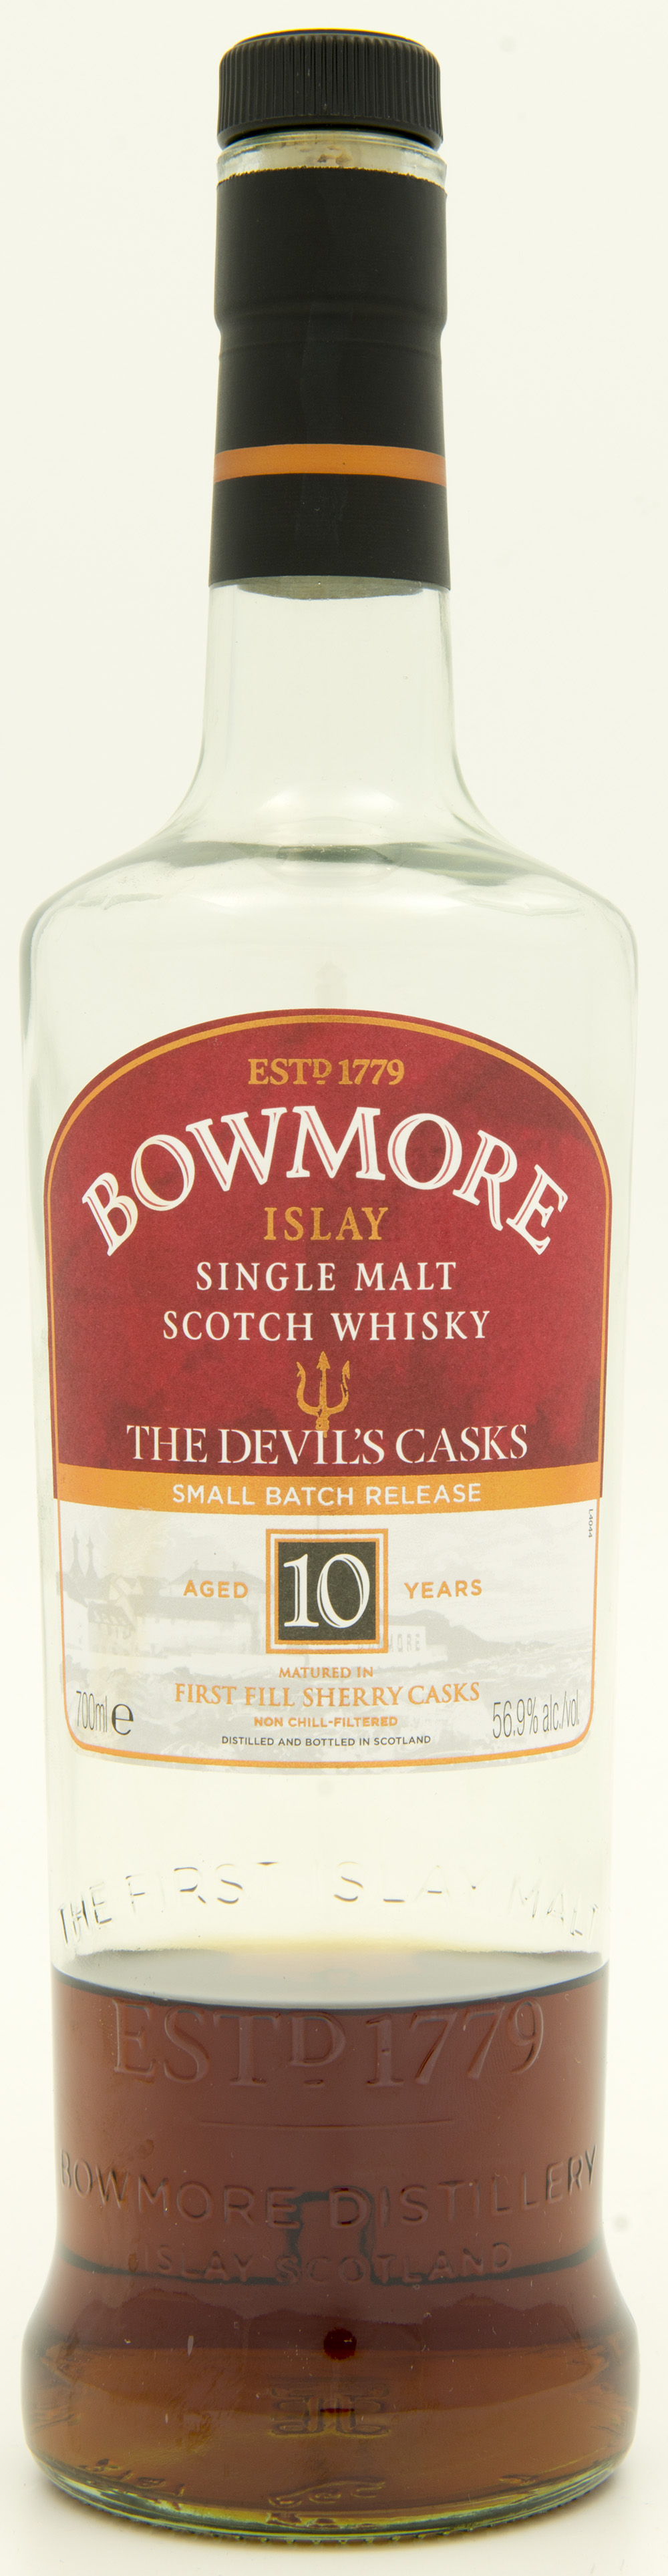 Billede: DSC_4770 - Bowmore Devils Cask - bottle front.jpg